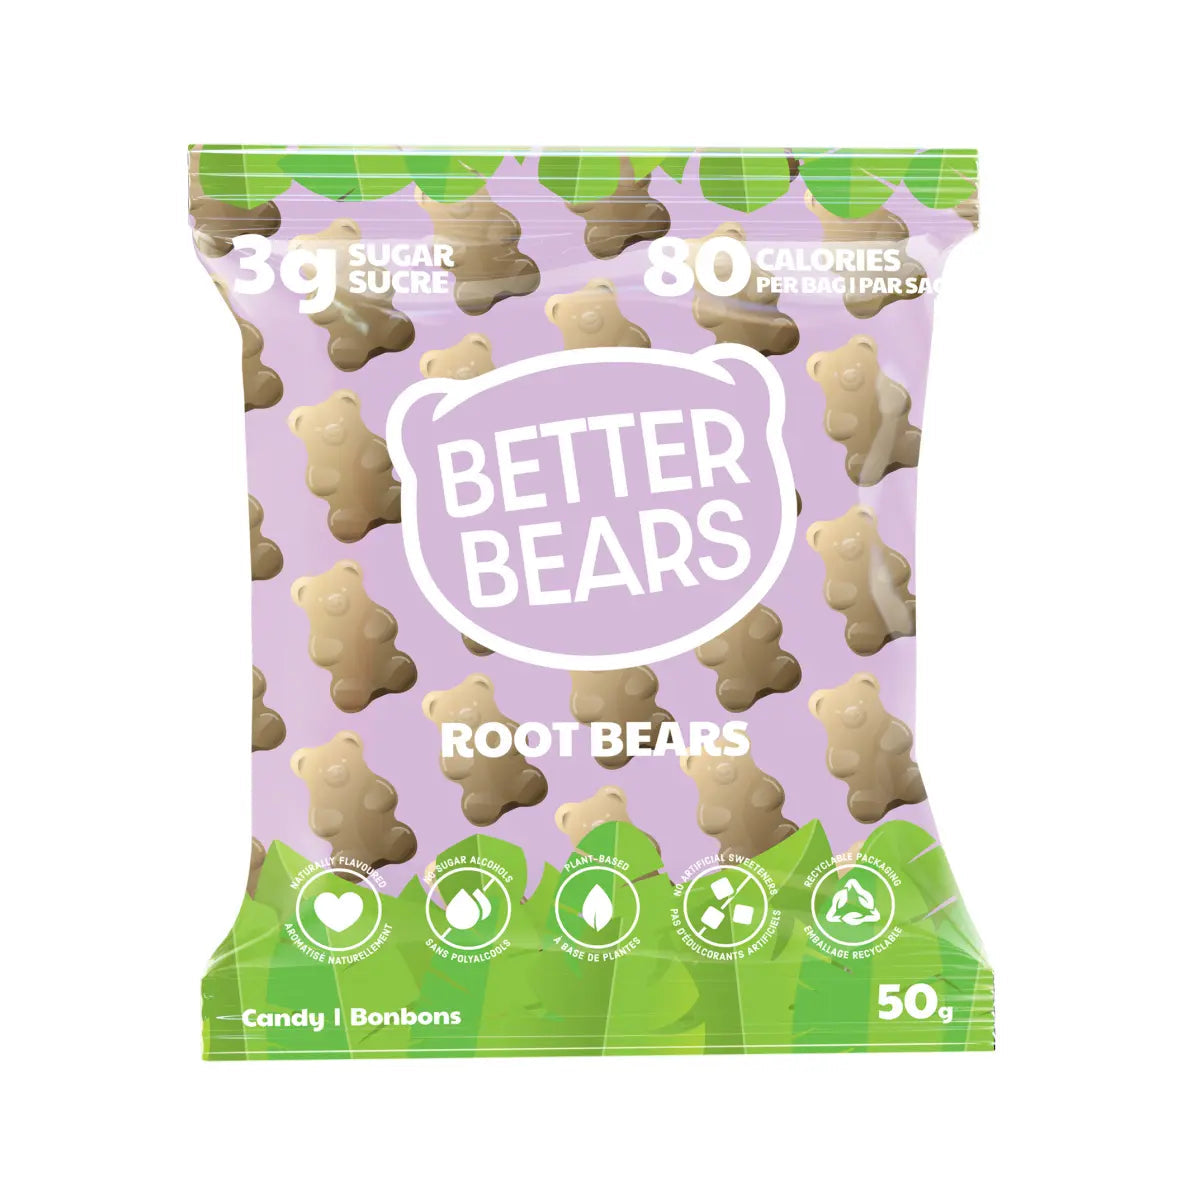 Better Bears Root Bears Gummy Bears 50g